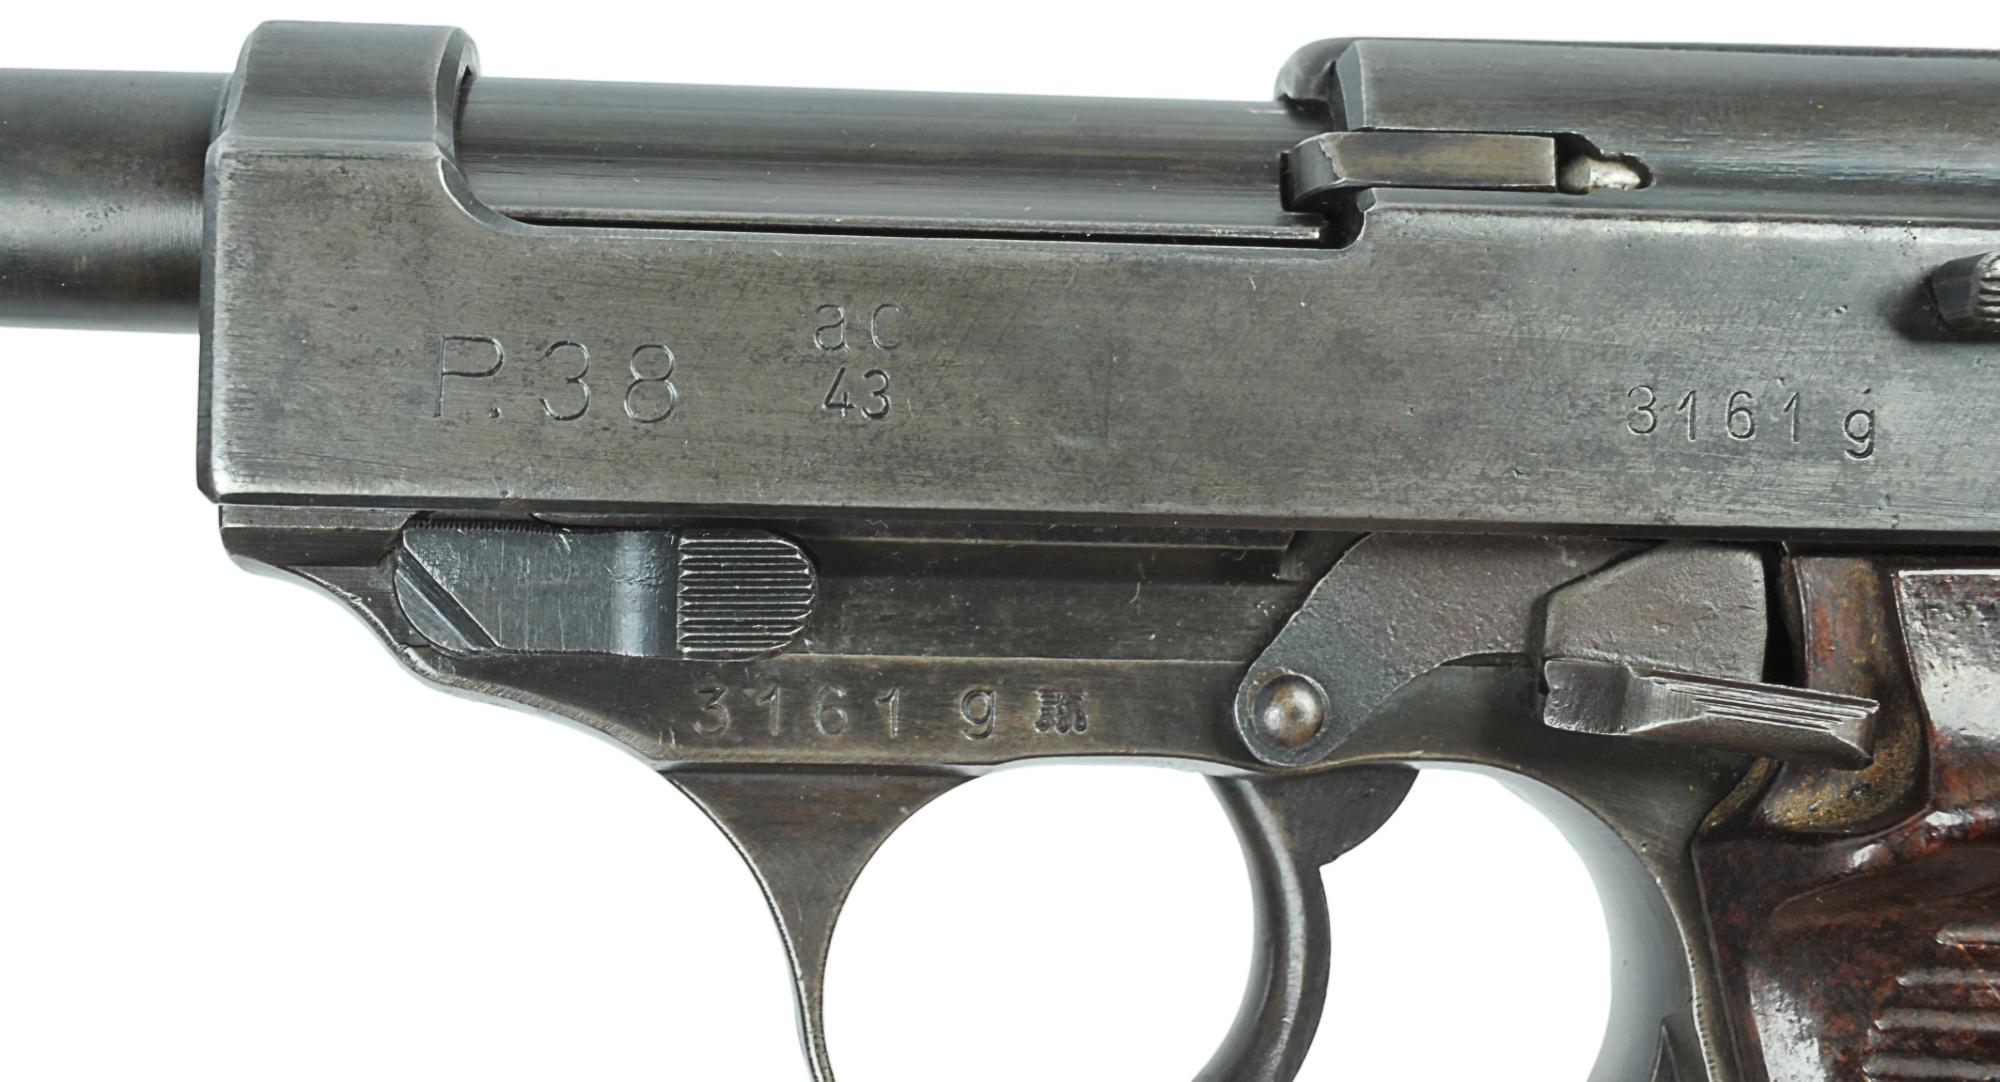 German Military WWII issue Walter P-38 9mm Semi-Automatic Pistol - FFL # 3161gl (KDC1)